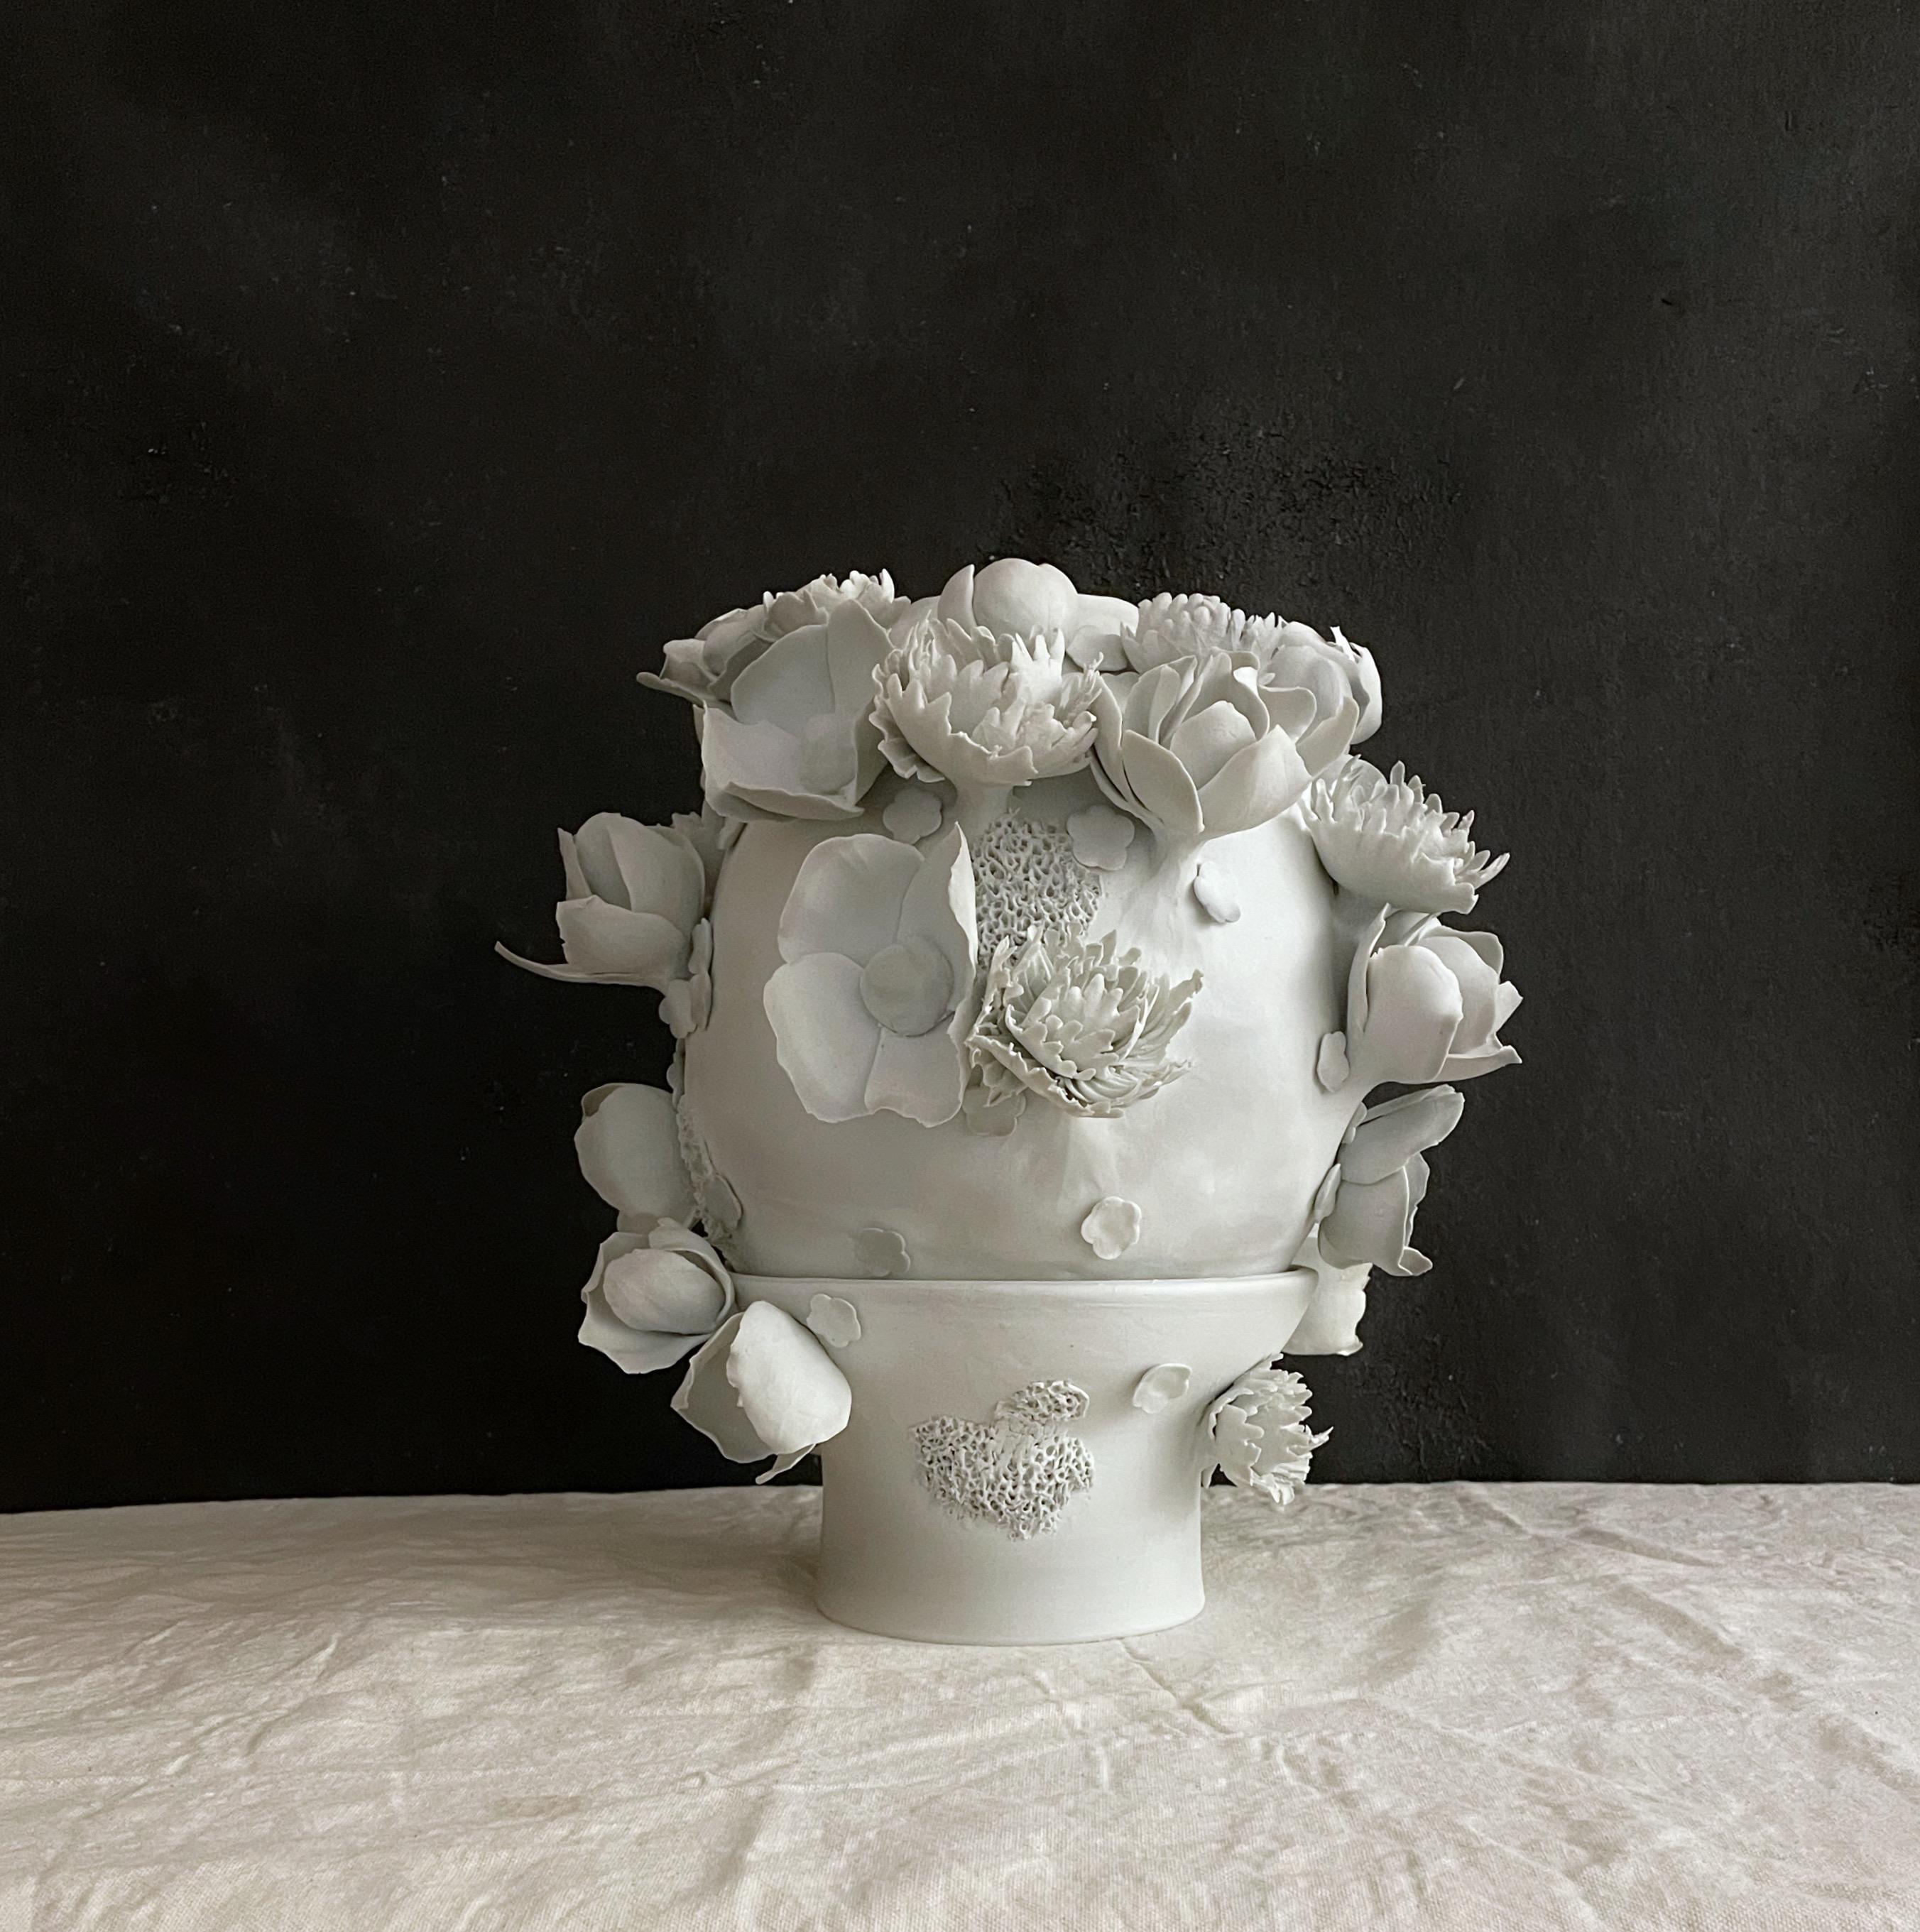 Diese einzigartige, zweiteilige Skulptur ist handgefertigt und mit Porzellanblumen verziert und mit dem reinen Porzellan-Touch mit nur Glasur im Inneren fertiggestellt.

Dear You Ceramics ist ein in Brooklyn ansässiges Keramikstudio, das sich auf